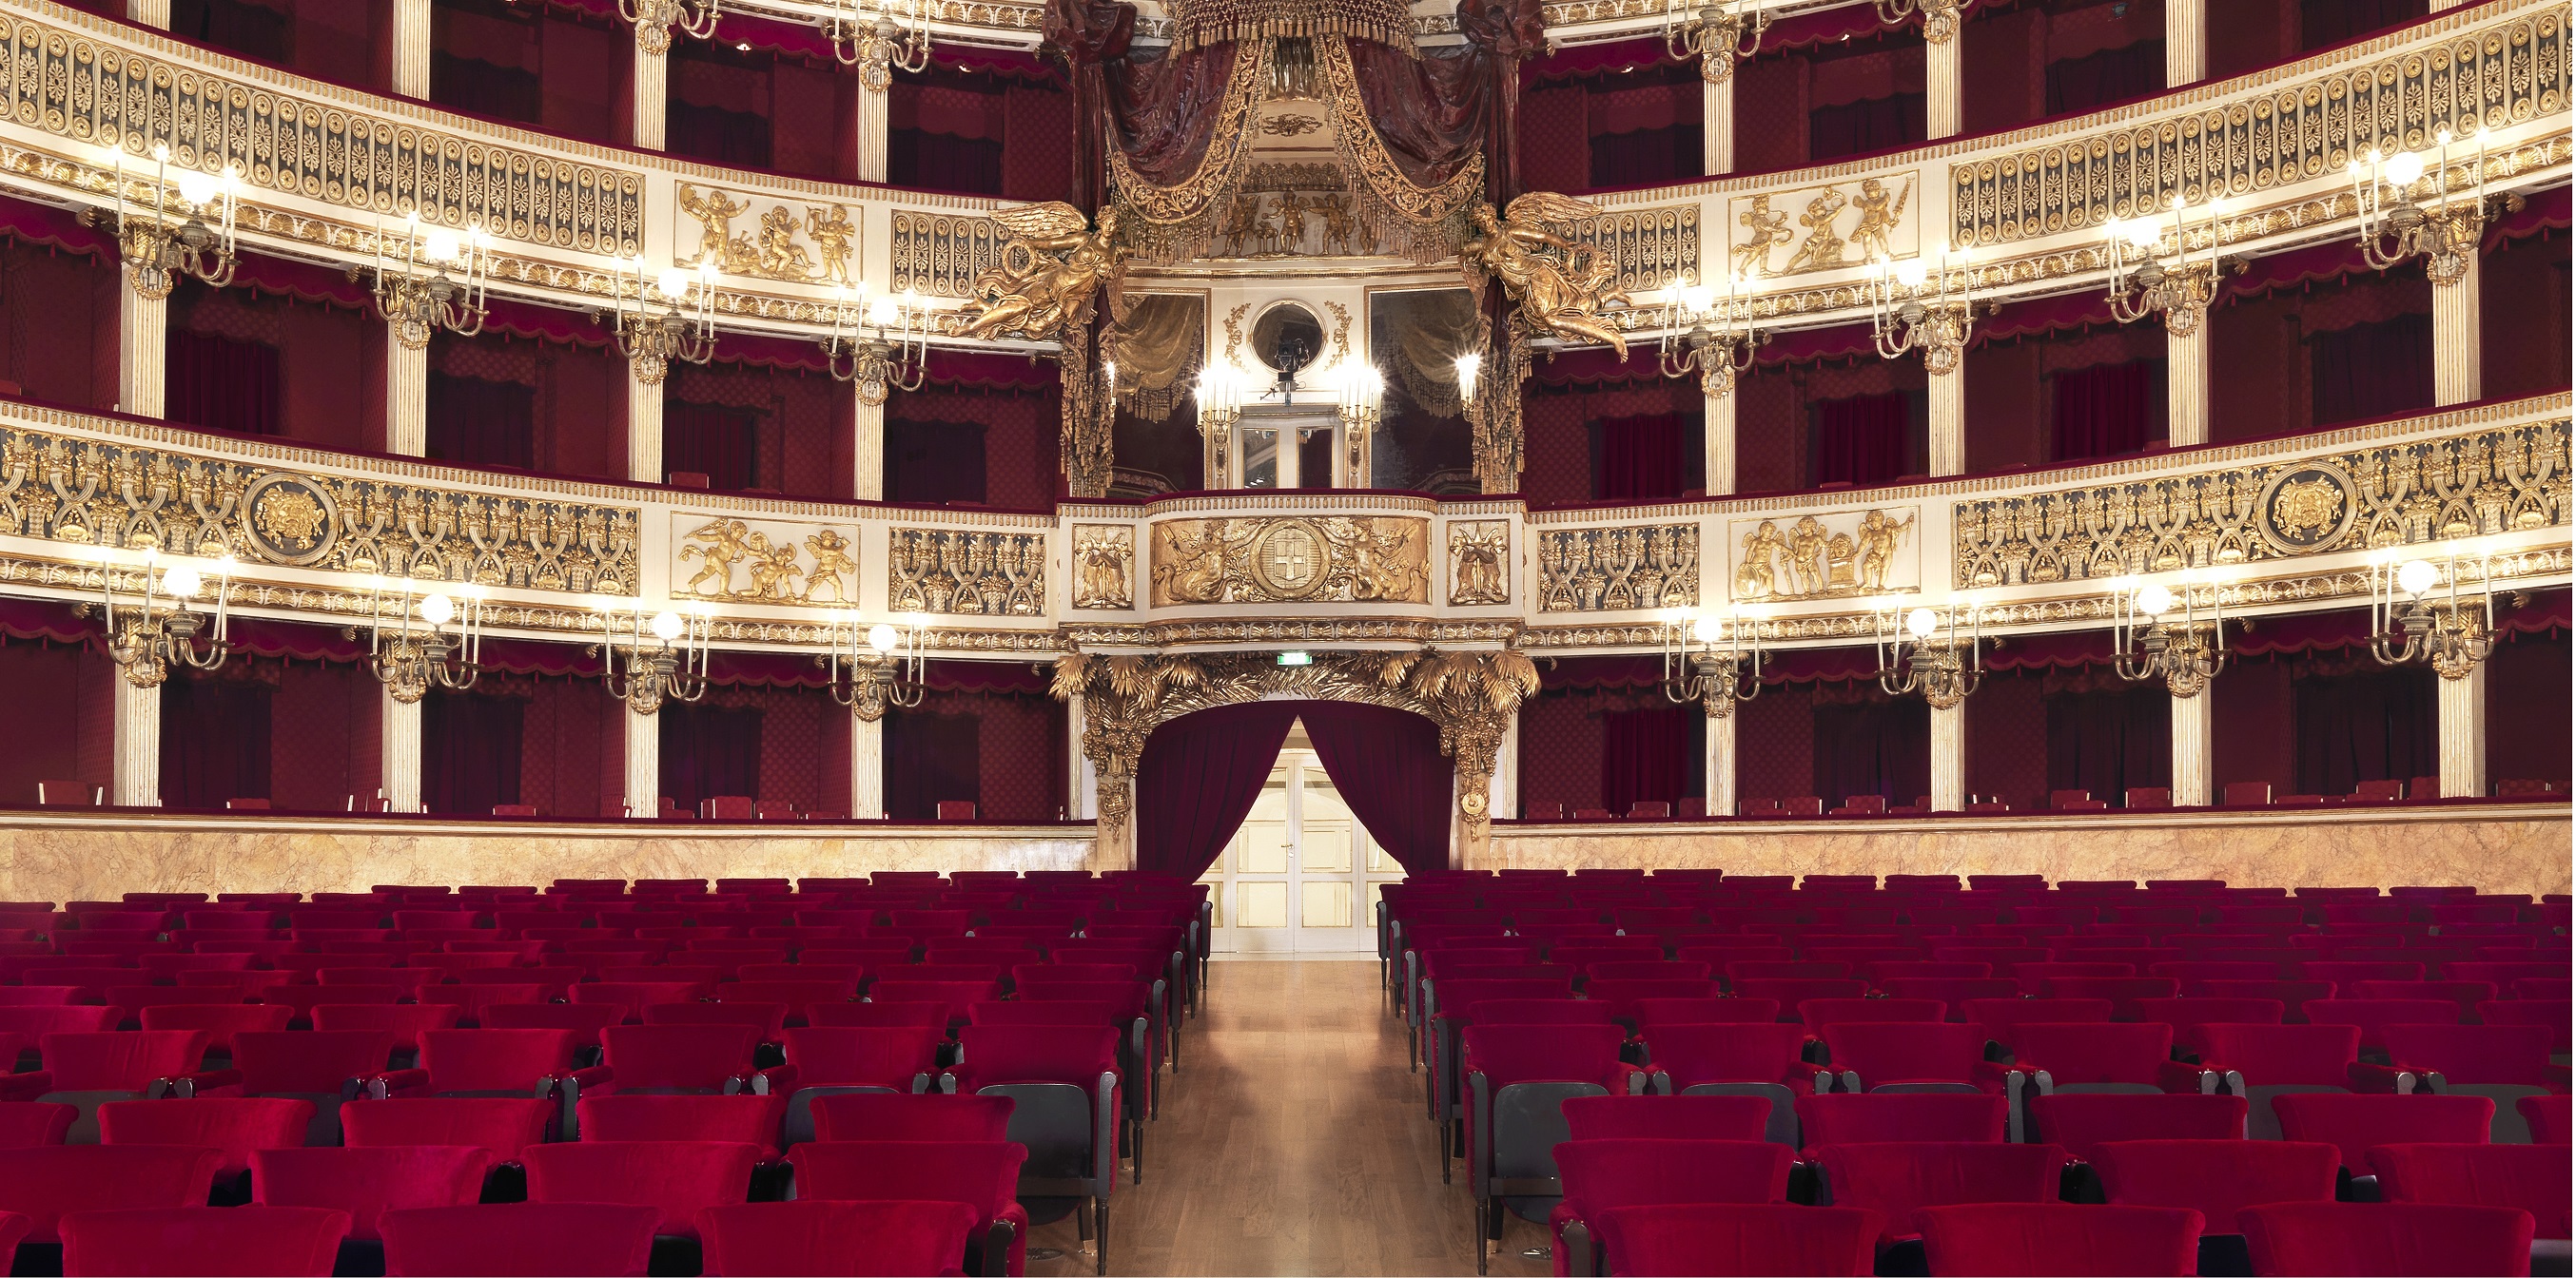 Teatro di San Carlo, lavori di ristrutturazione ago.2008 - gen.2